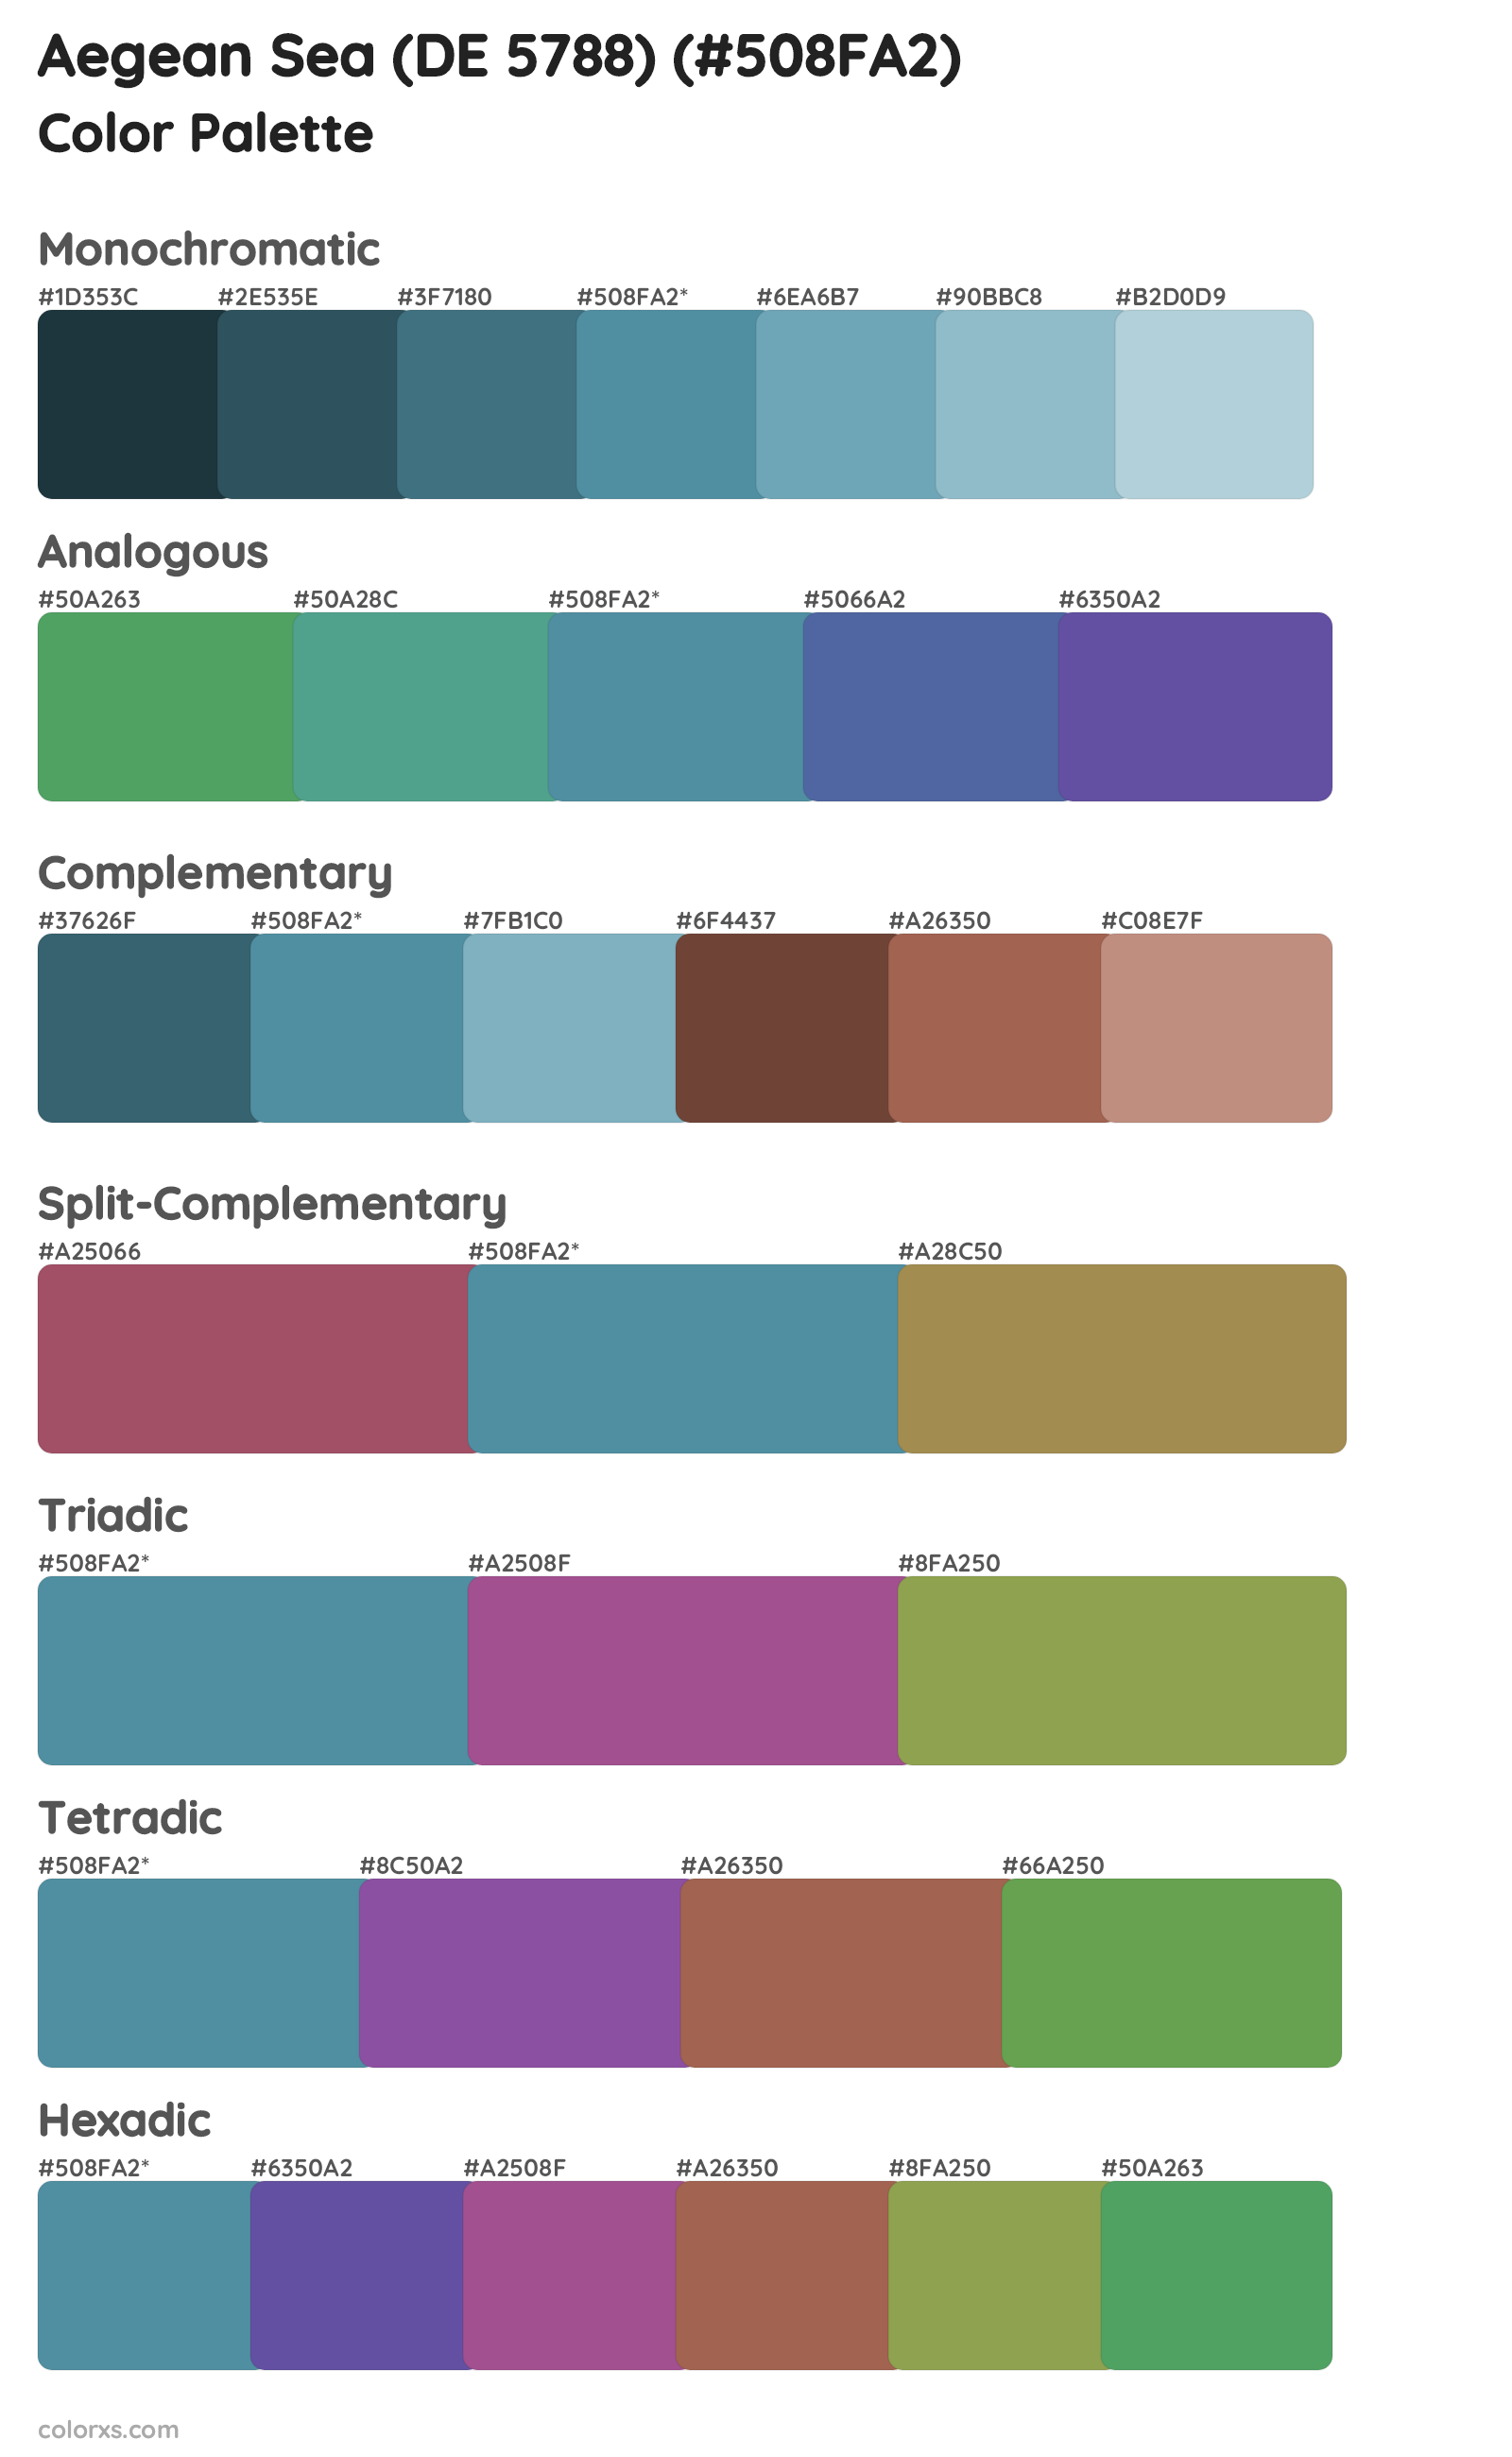 Aegean Sea (DE 5788) Color Scheme Palettes